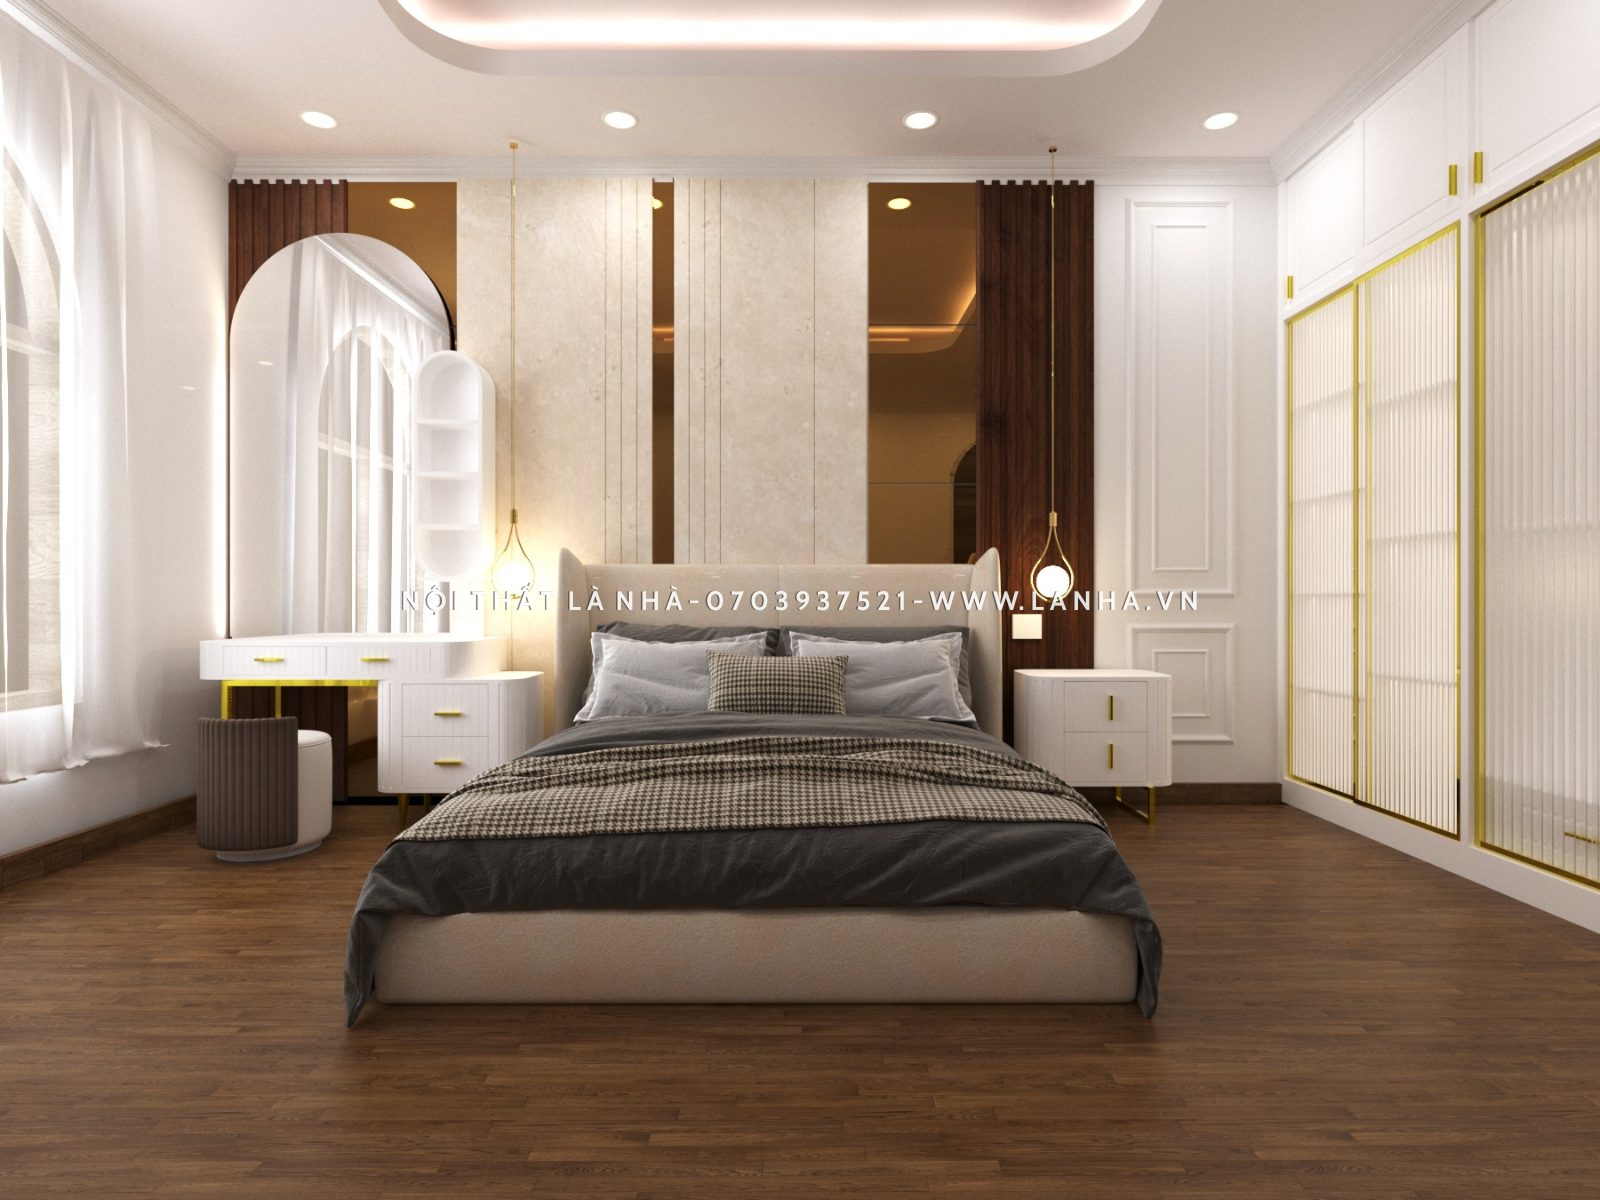 Thiết kế phòng ngủ màu trắng xám hiện đại